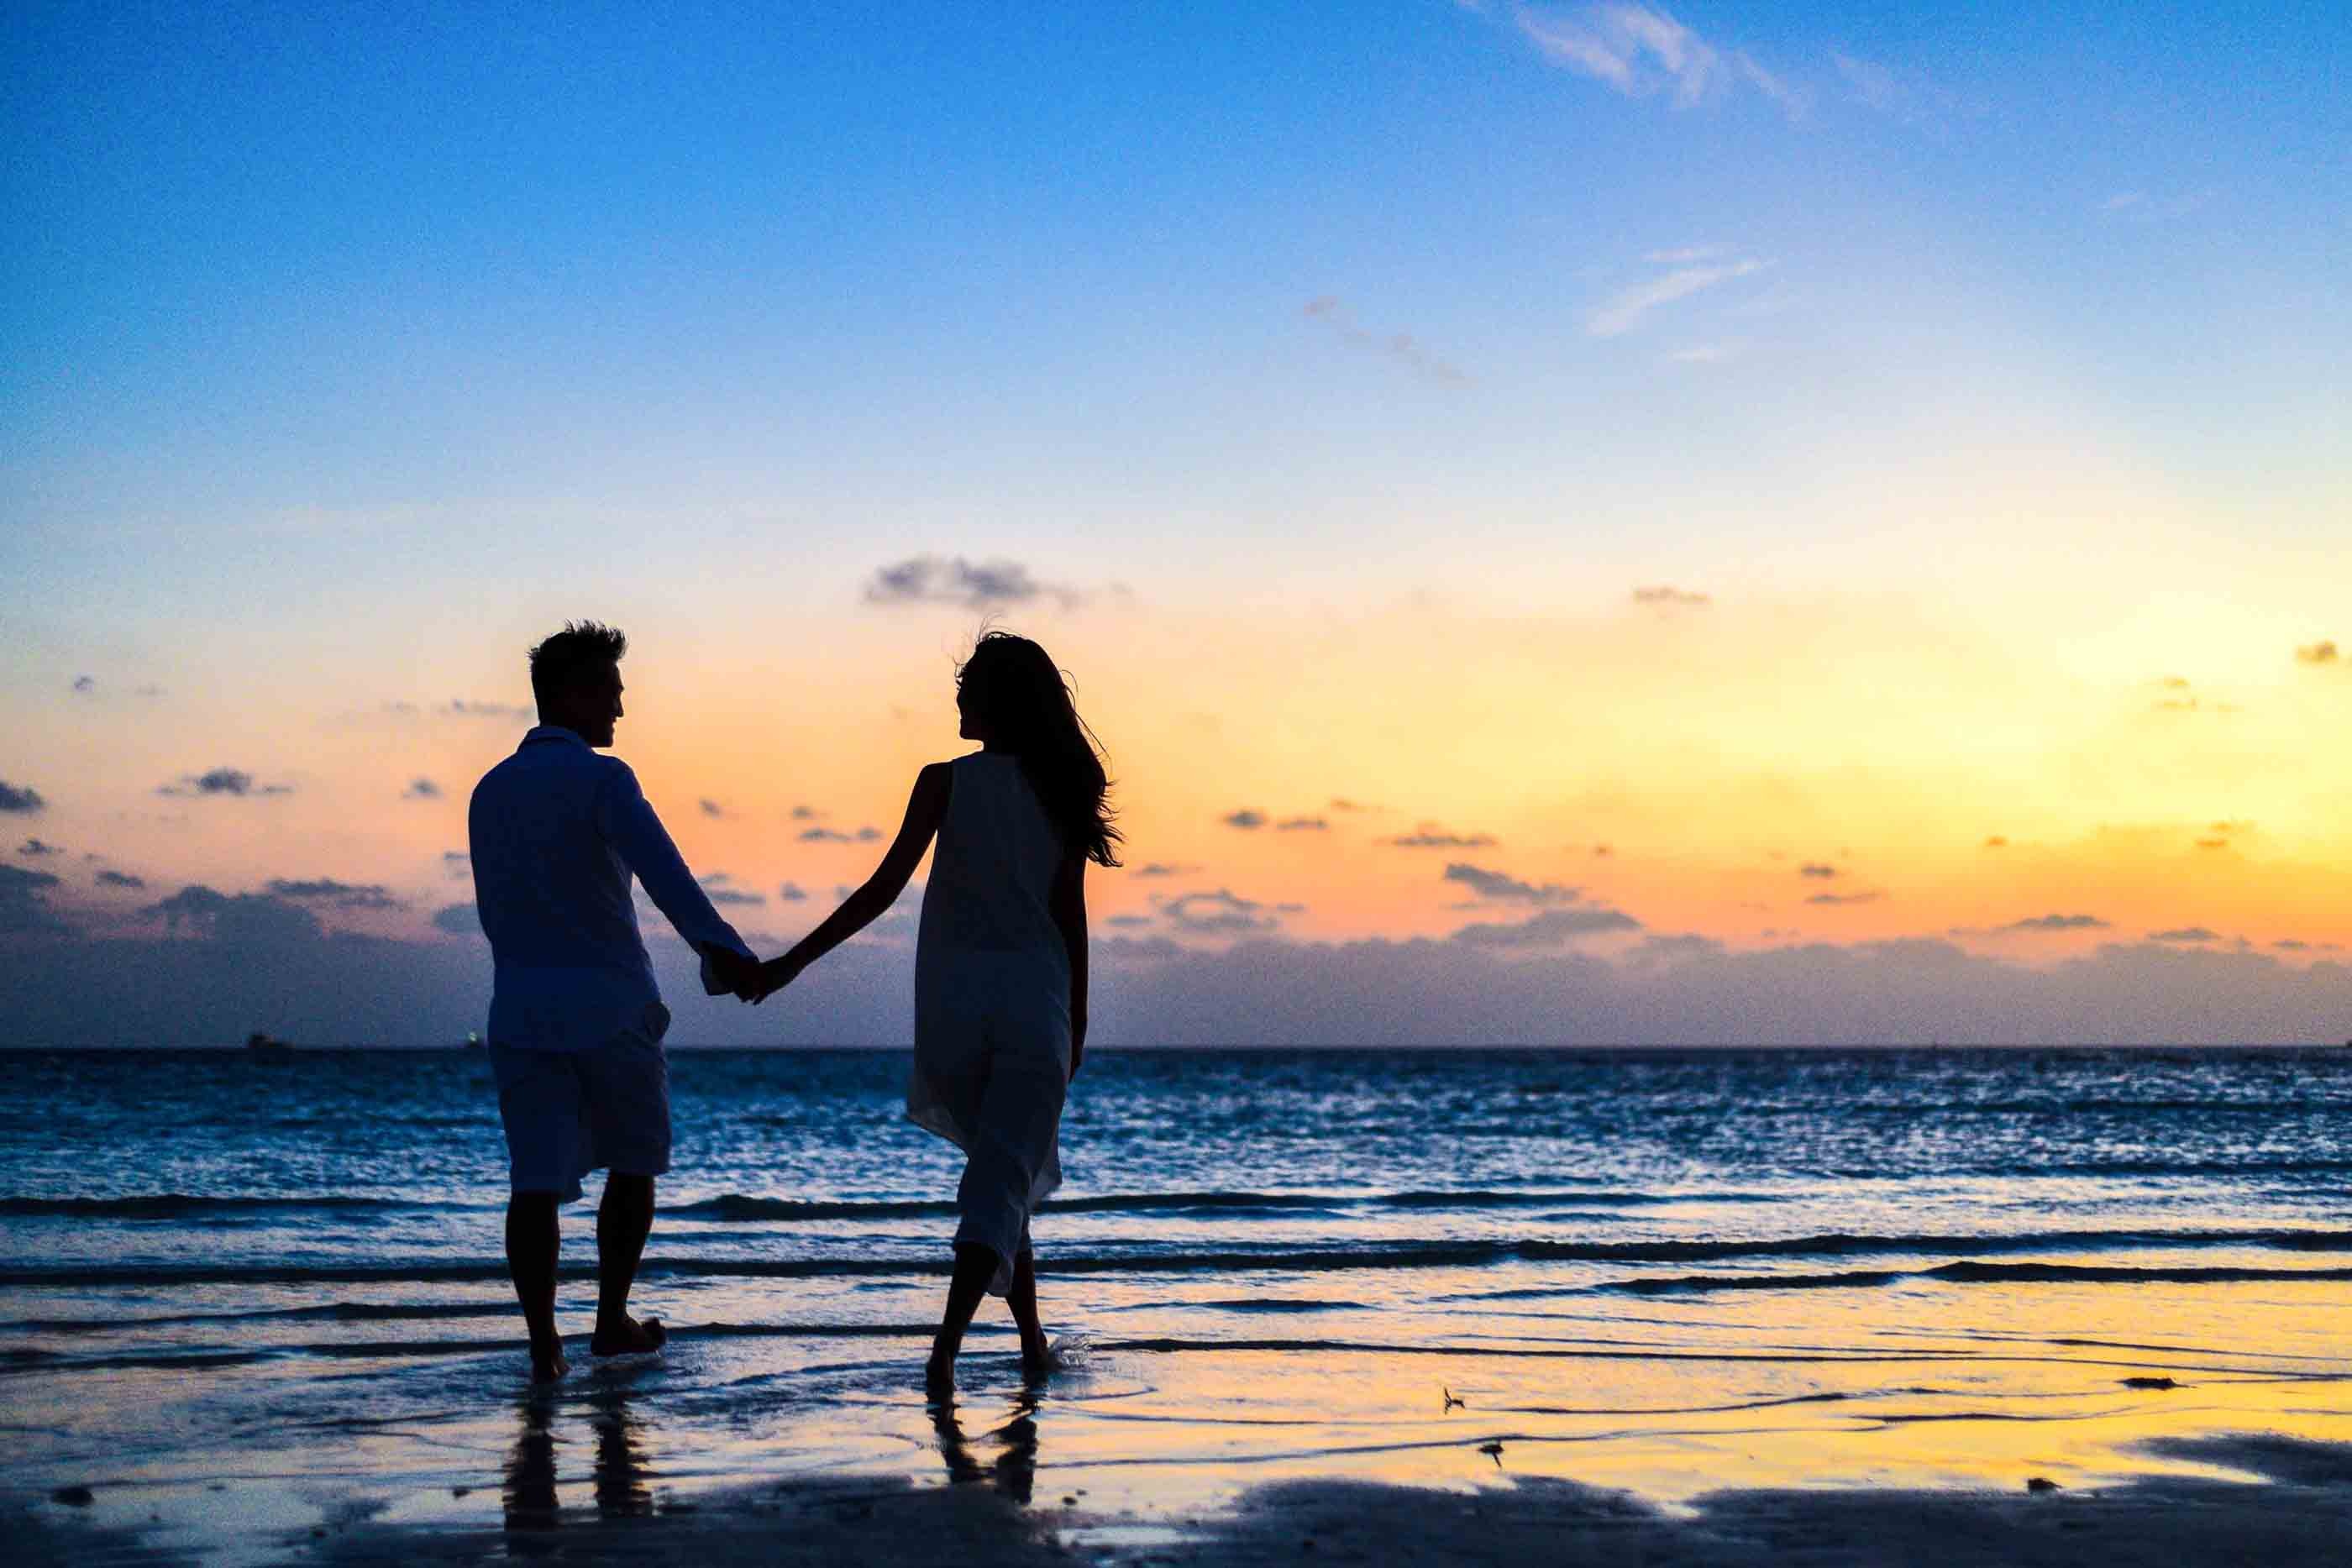 A romantic couple walking on the seashore. | Source: Pexels